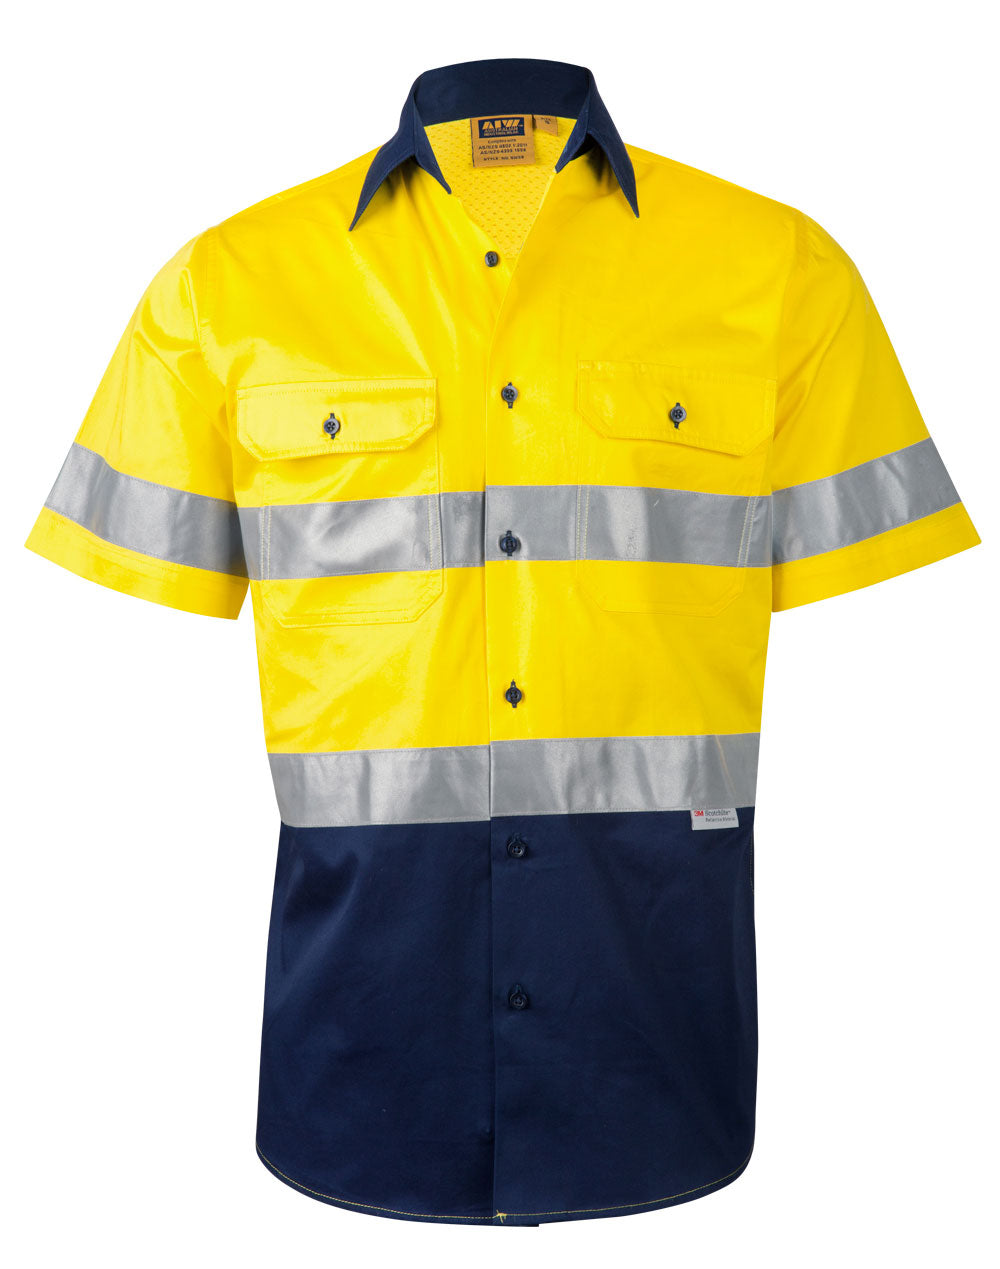 [SW59] Men's Hi-Vis Cool Breeze Safety S/S Shirt (3M Tape)